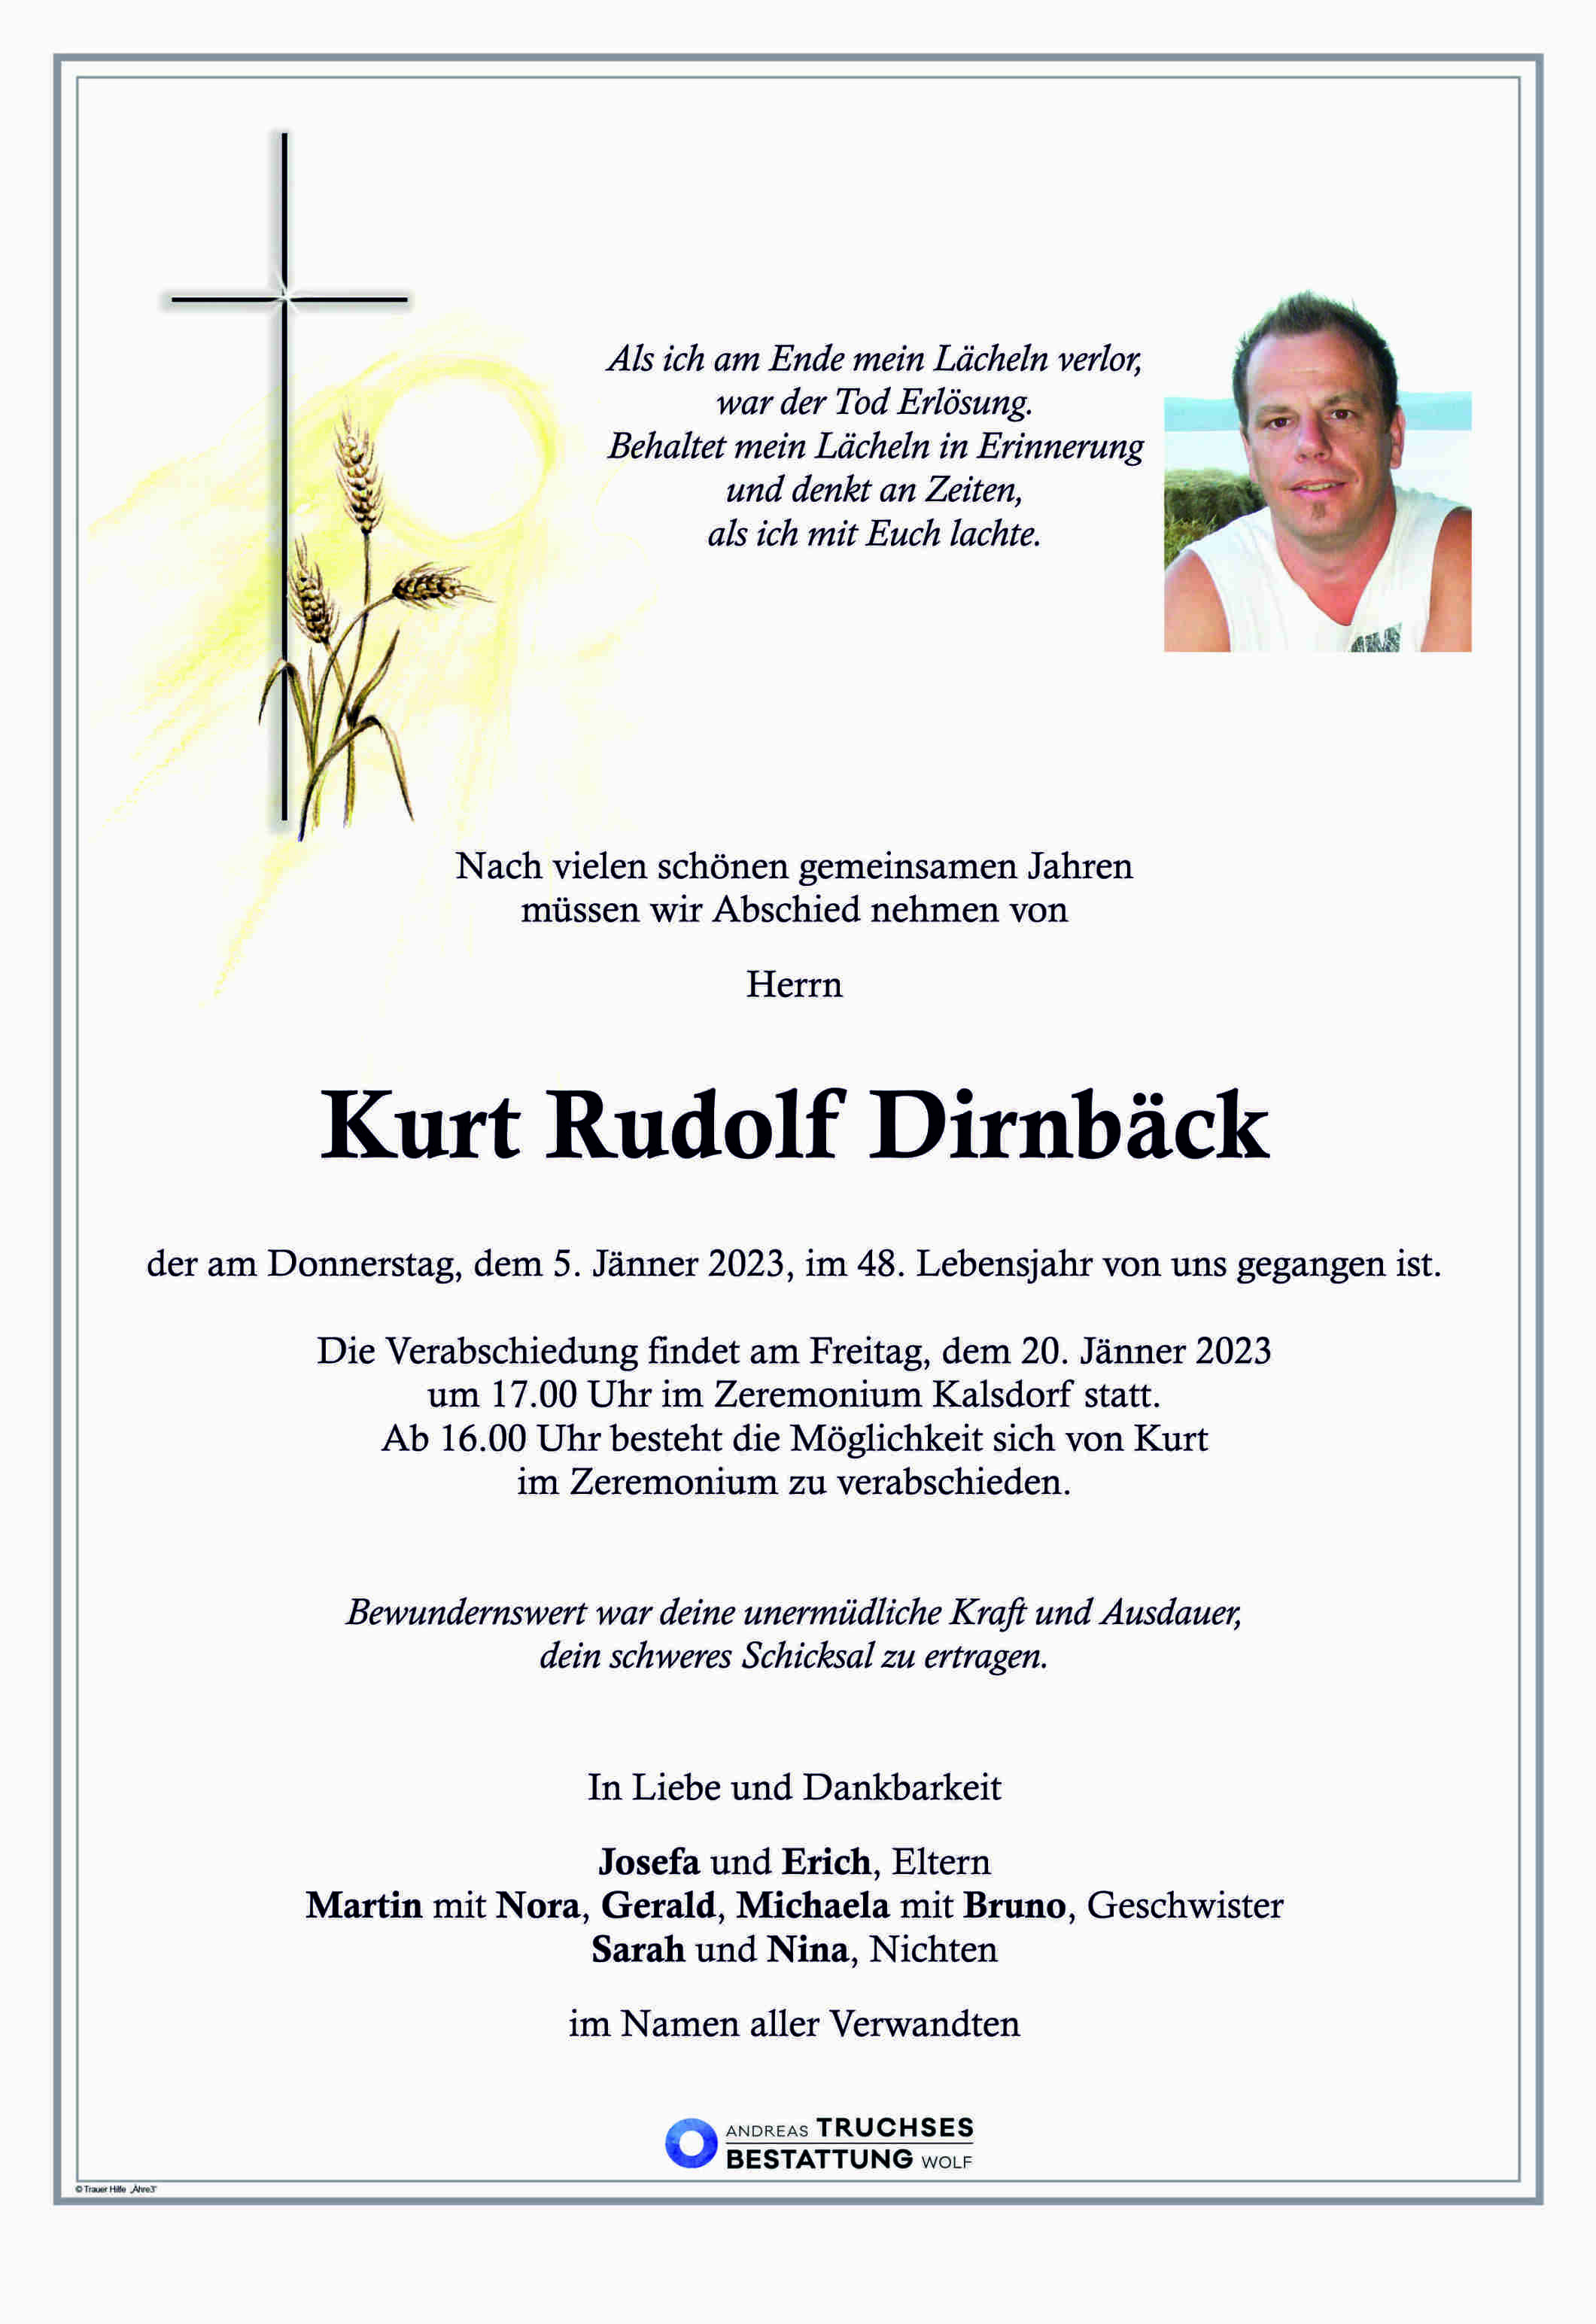 Kurt Rudolf Dirnbäck